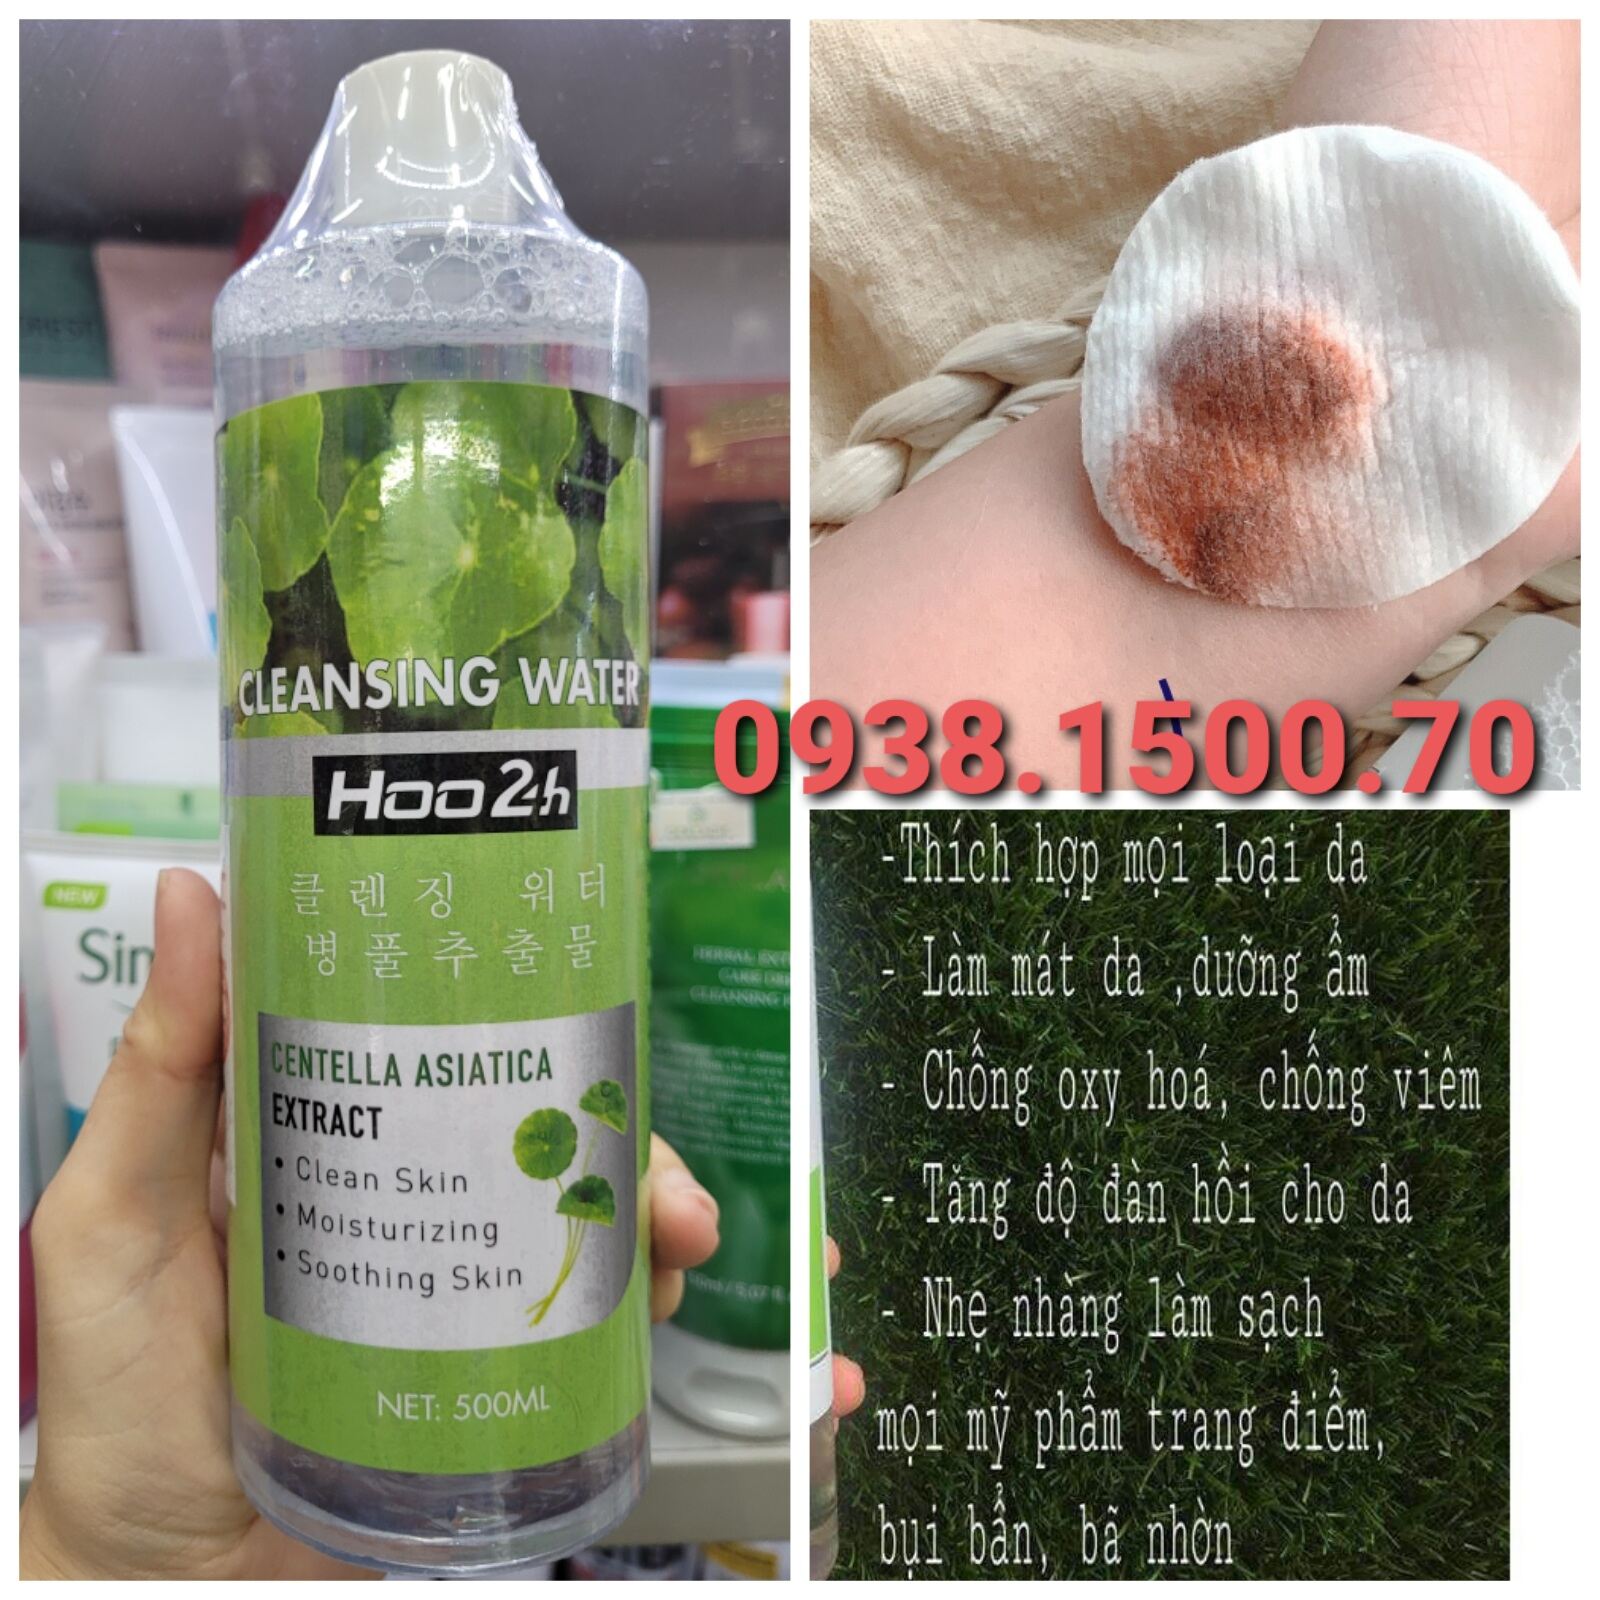 NƯỚC TẨY TRANG RAU MÁ Hoo2h Cleansing water Centella Asiatica Extract 500ml